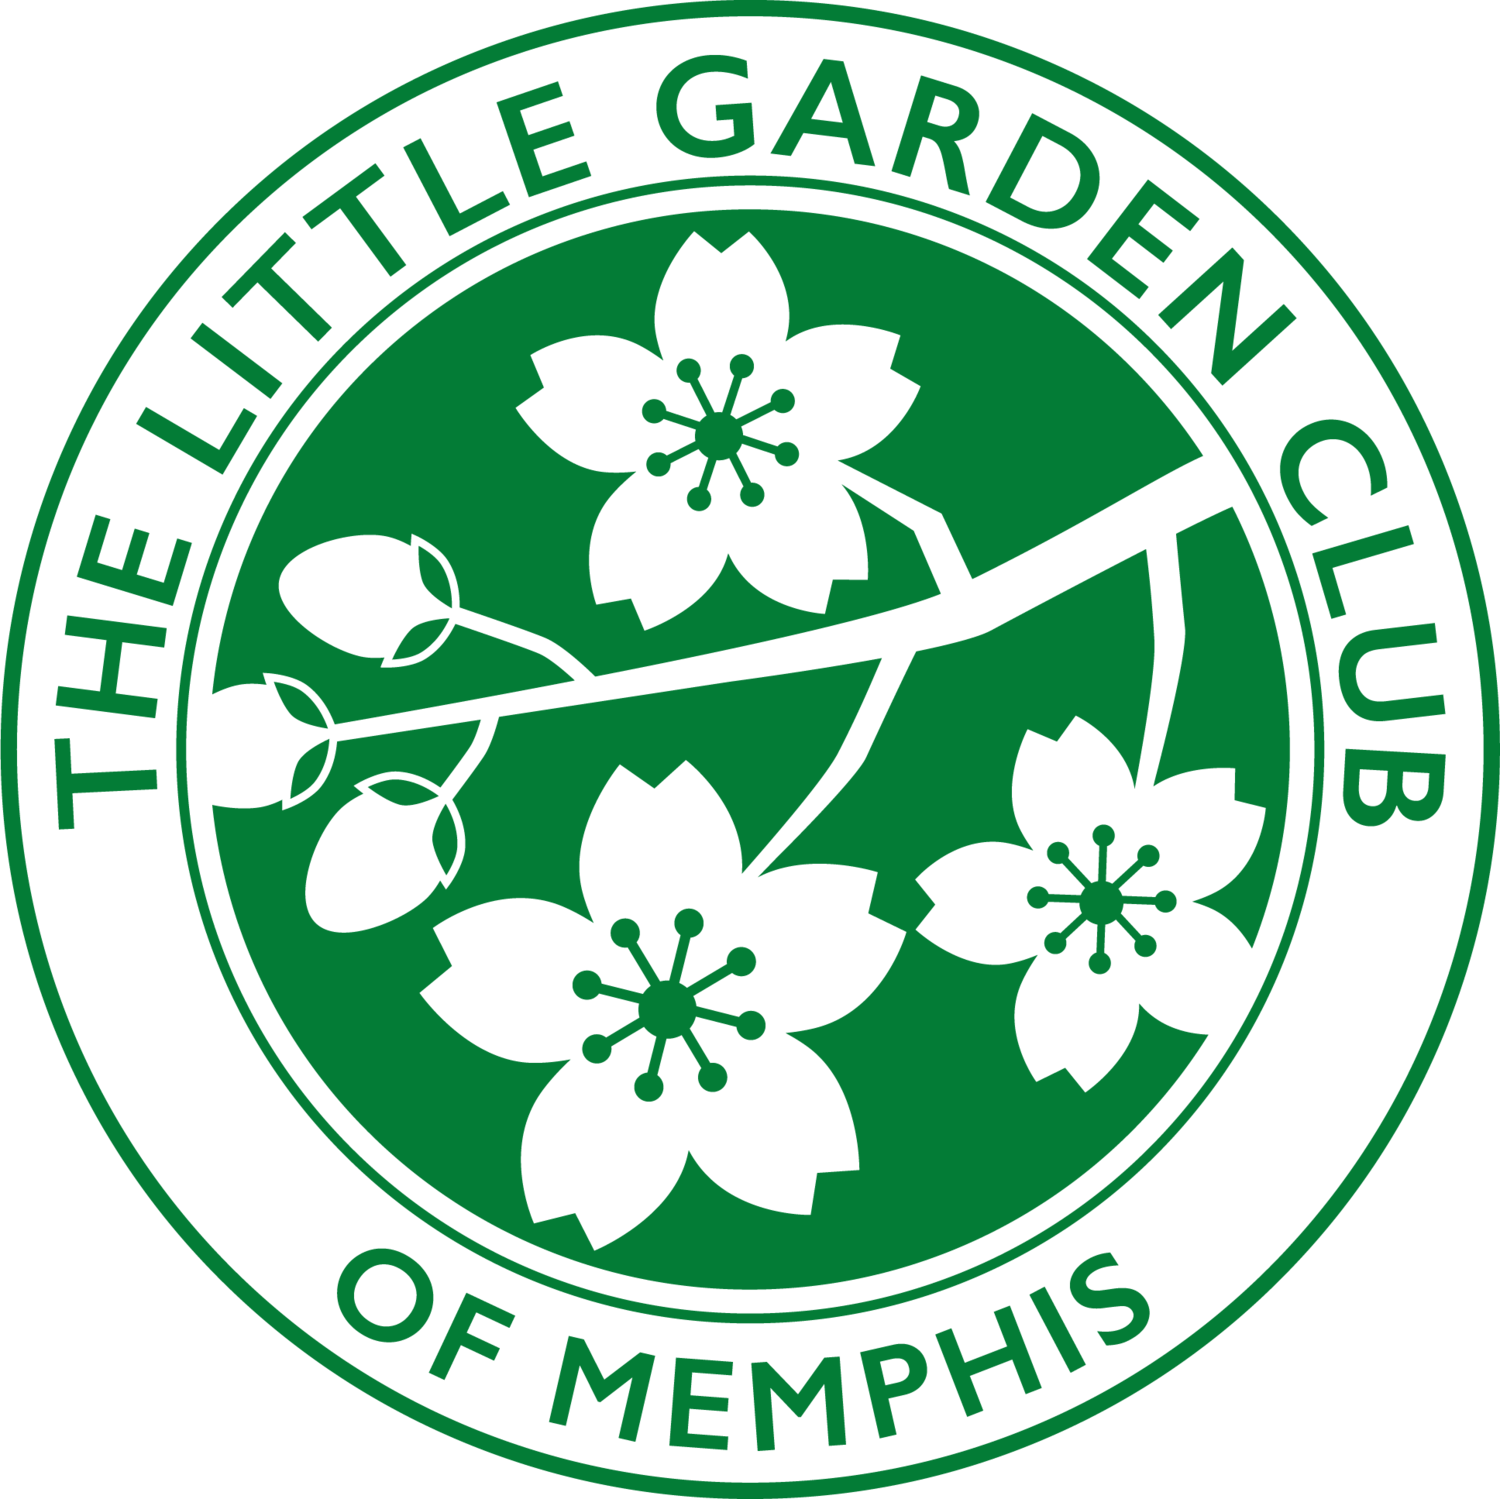 The Little Garden Club of Memphis